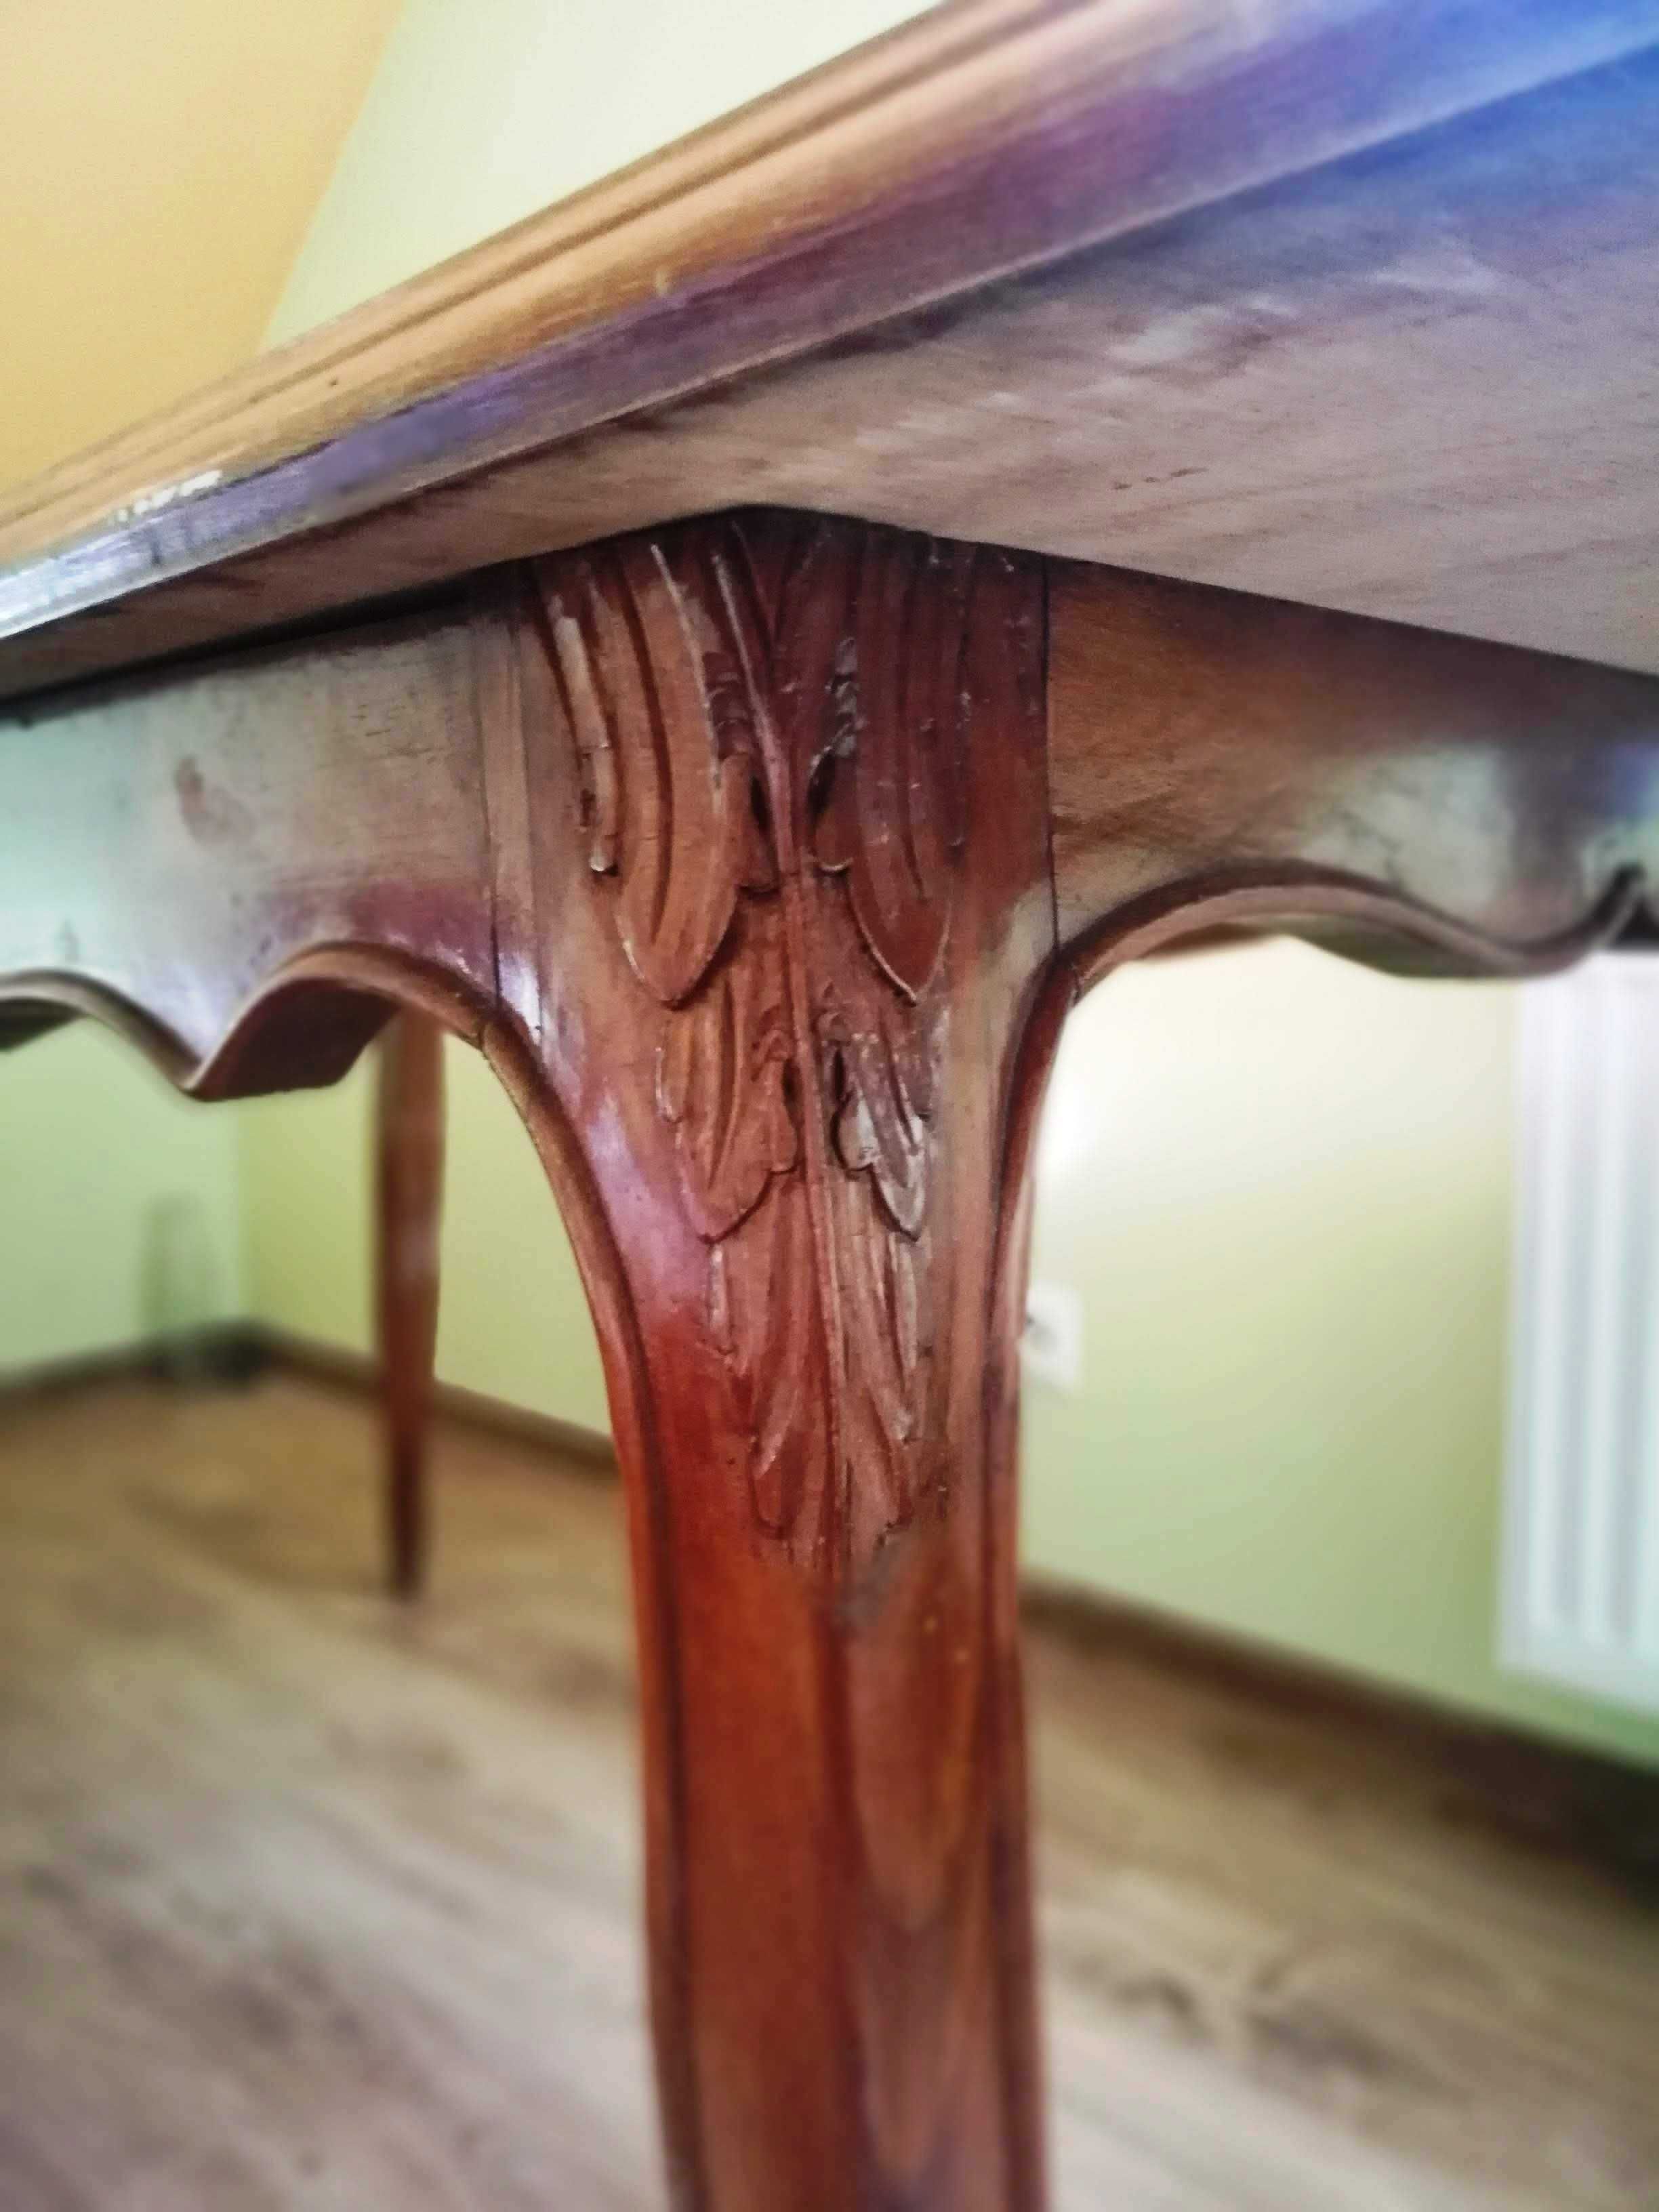 Stół rozkładany duży drewniany stylowy Ludwik orzech połysk 80x175 cm